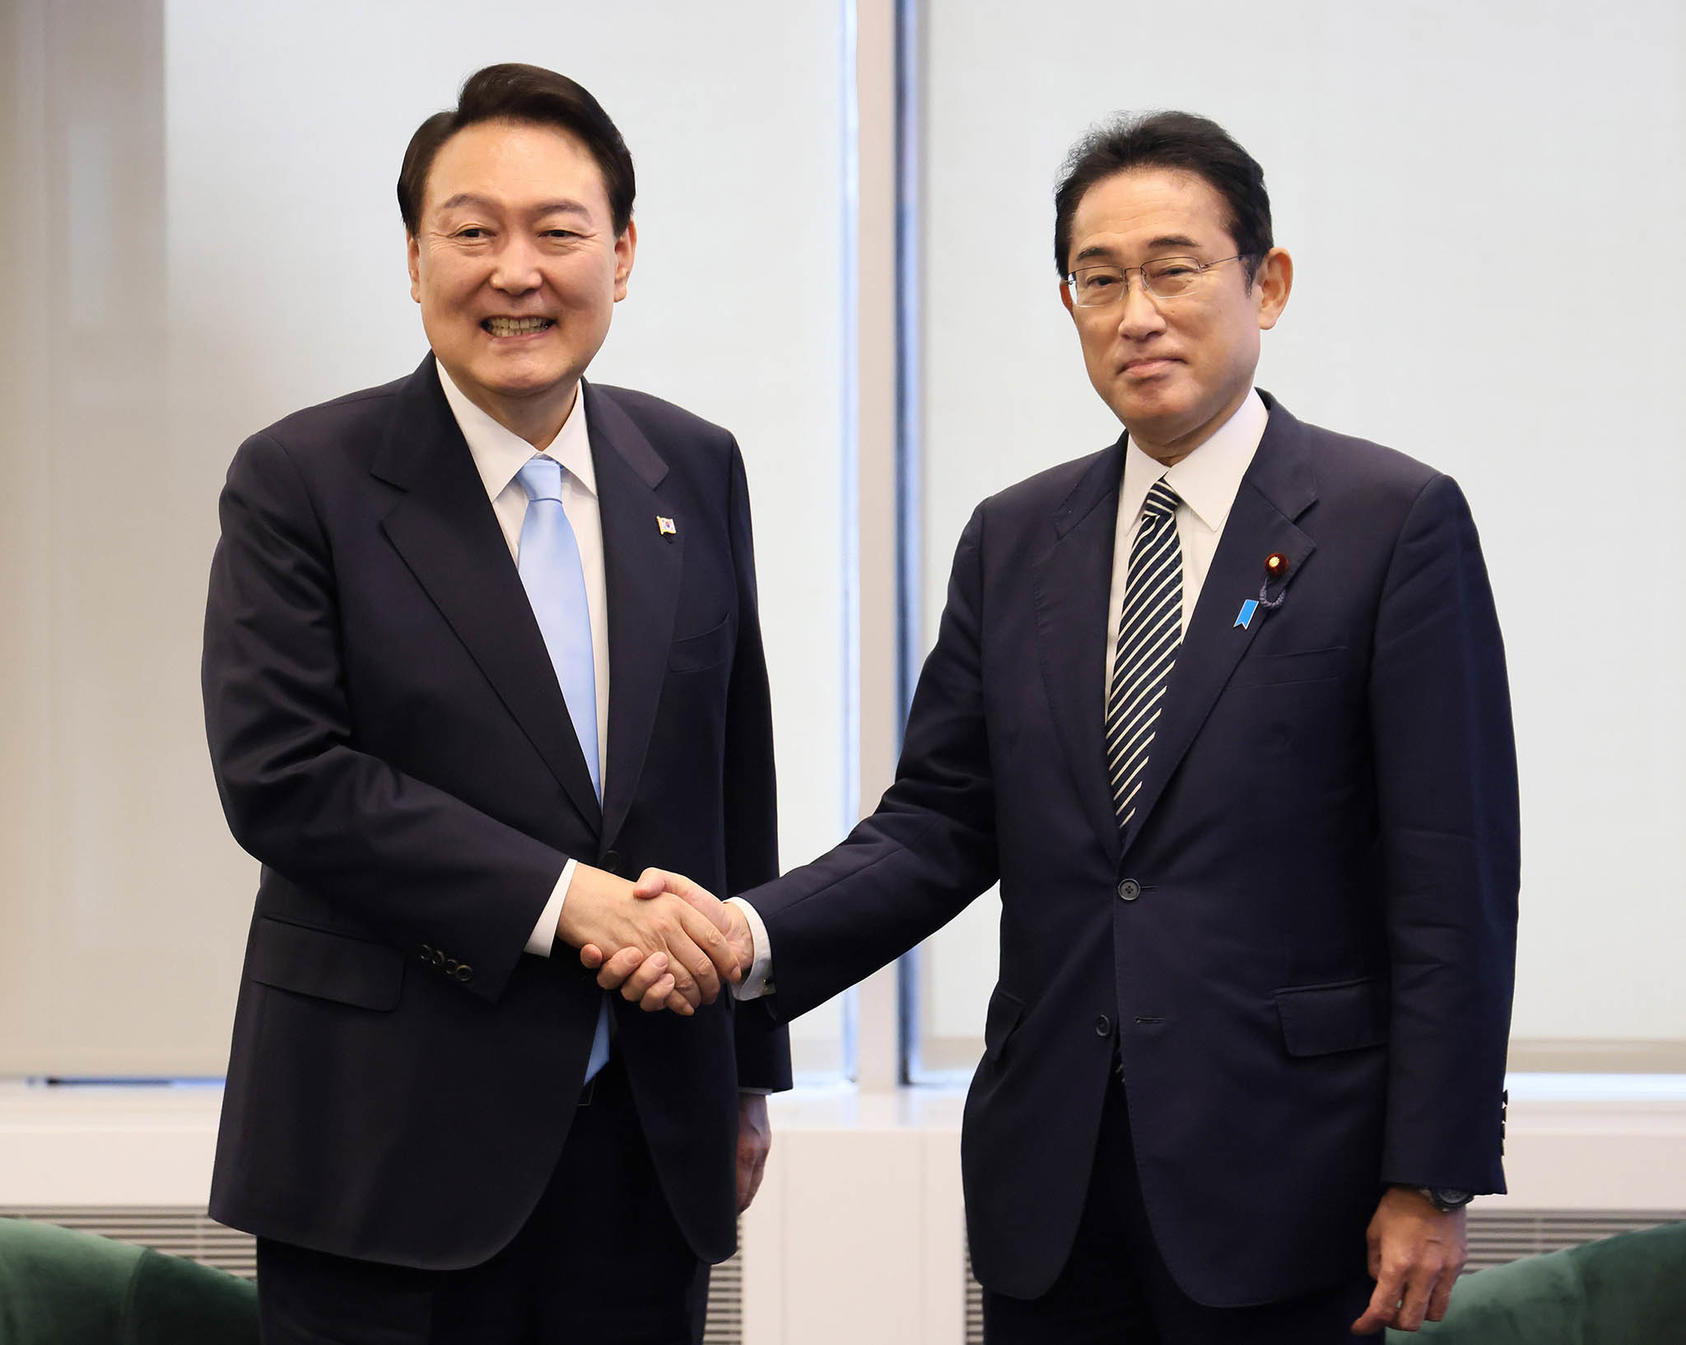 일본과 한국의 최근 관계 회복 시도의 이면에는 무엇이 있습니까?